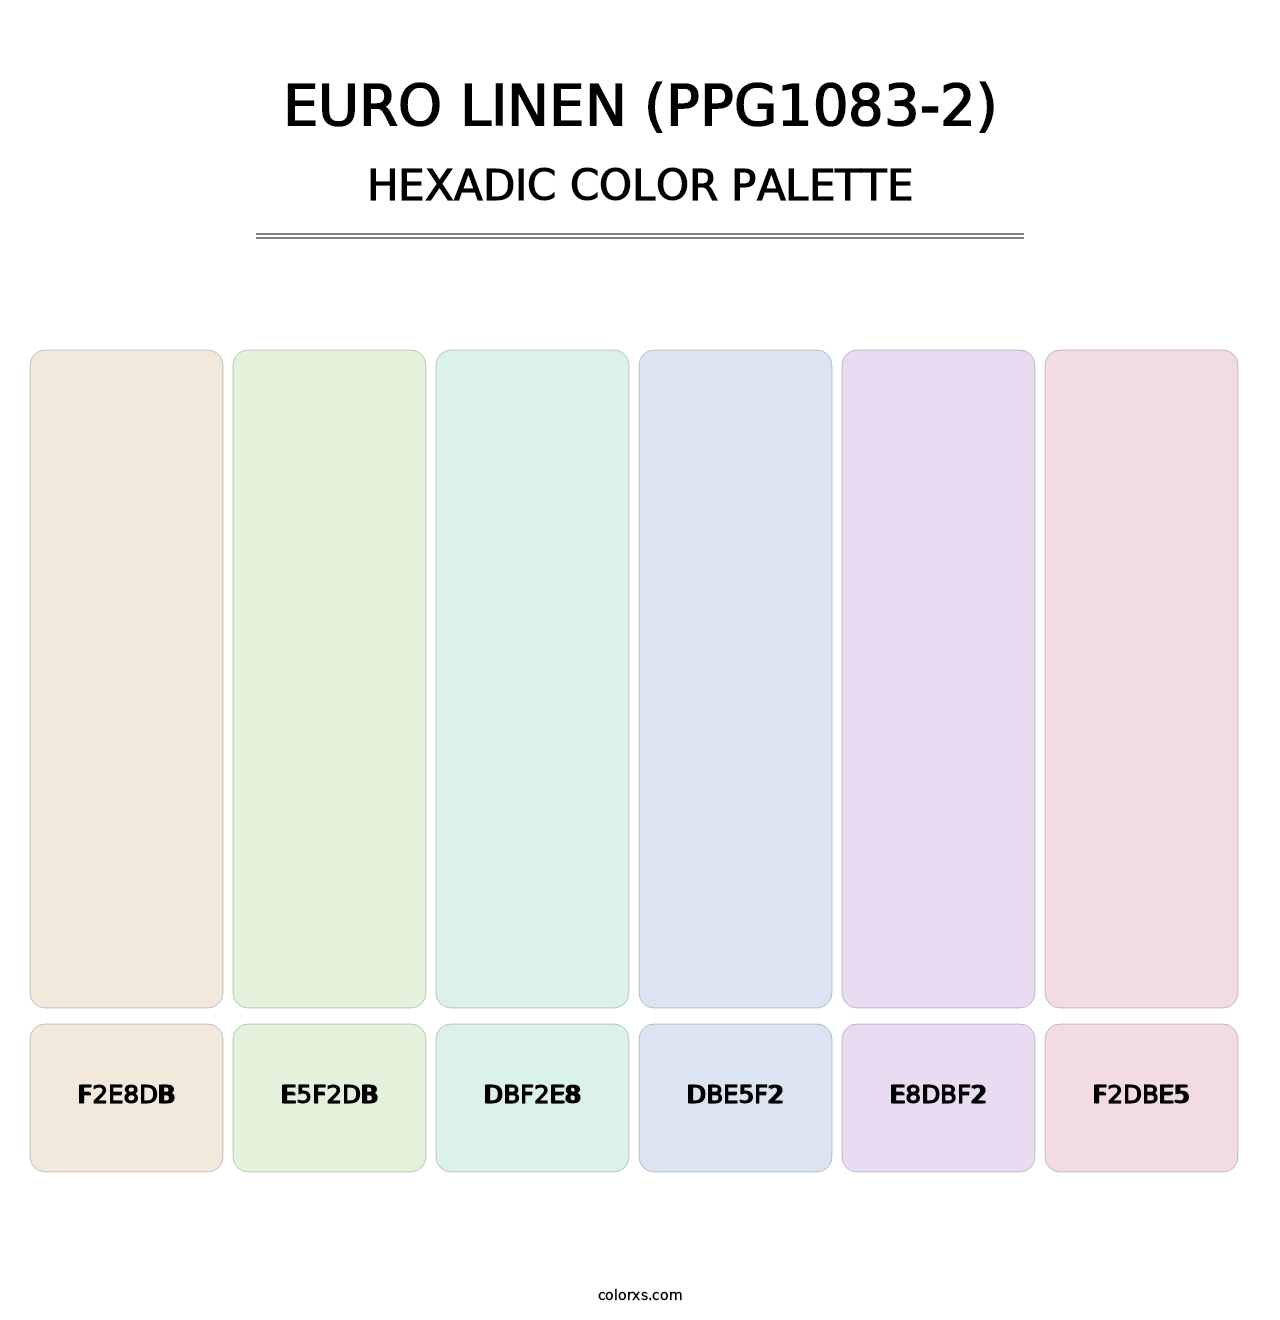 Euro Linen (PPG1083-2) - Hexadic Color Palette